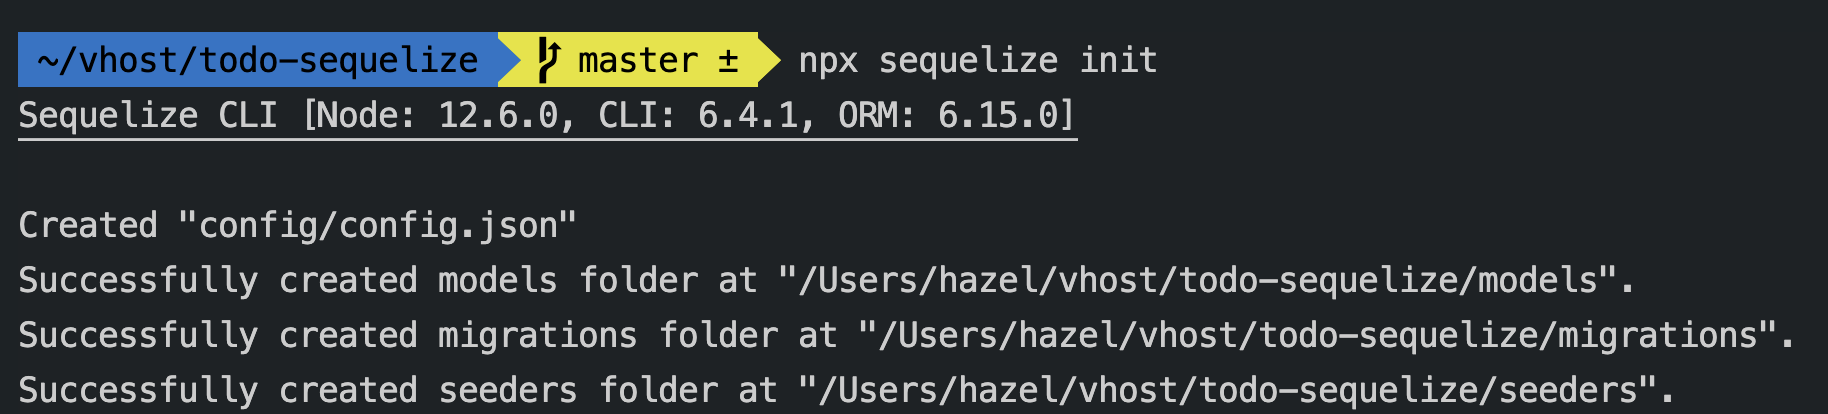 npx-sequelize-init